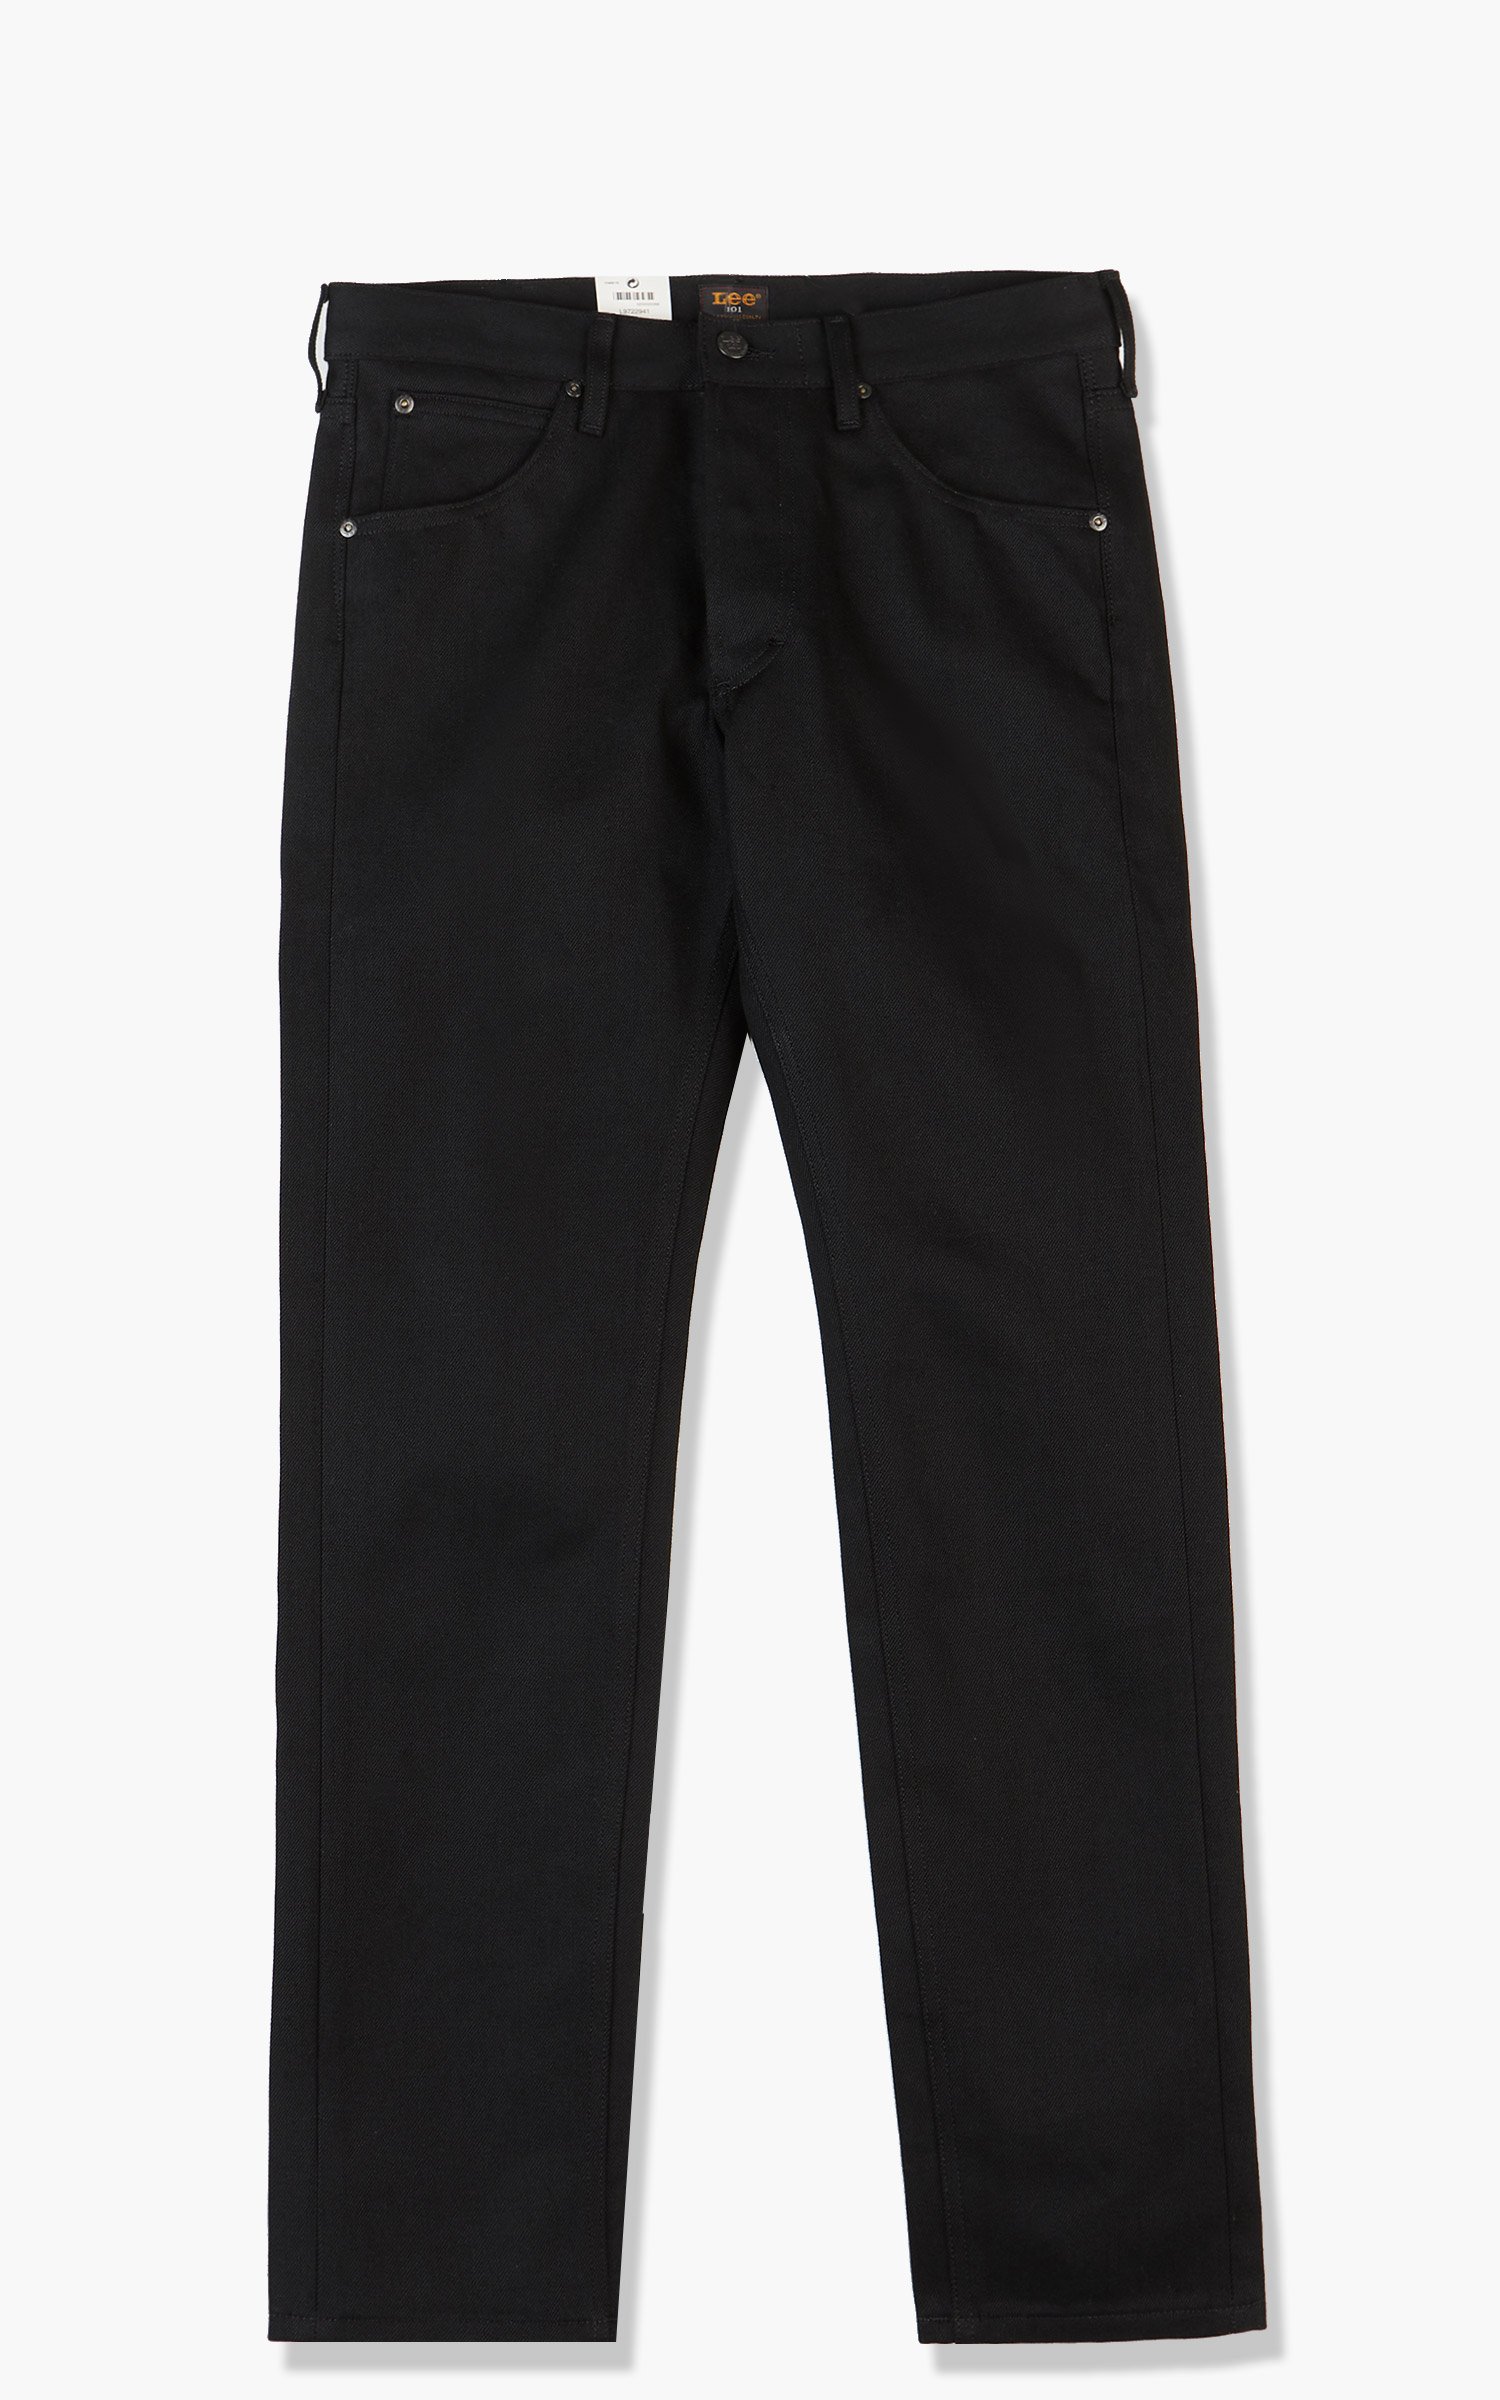 Lee 101 101 Z Jeans Dry Selvedge Black 13.75oz | Cultizm